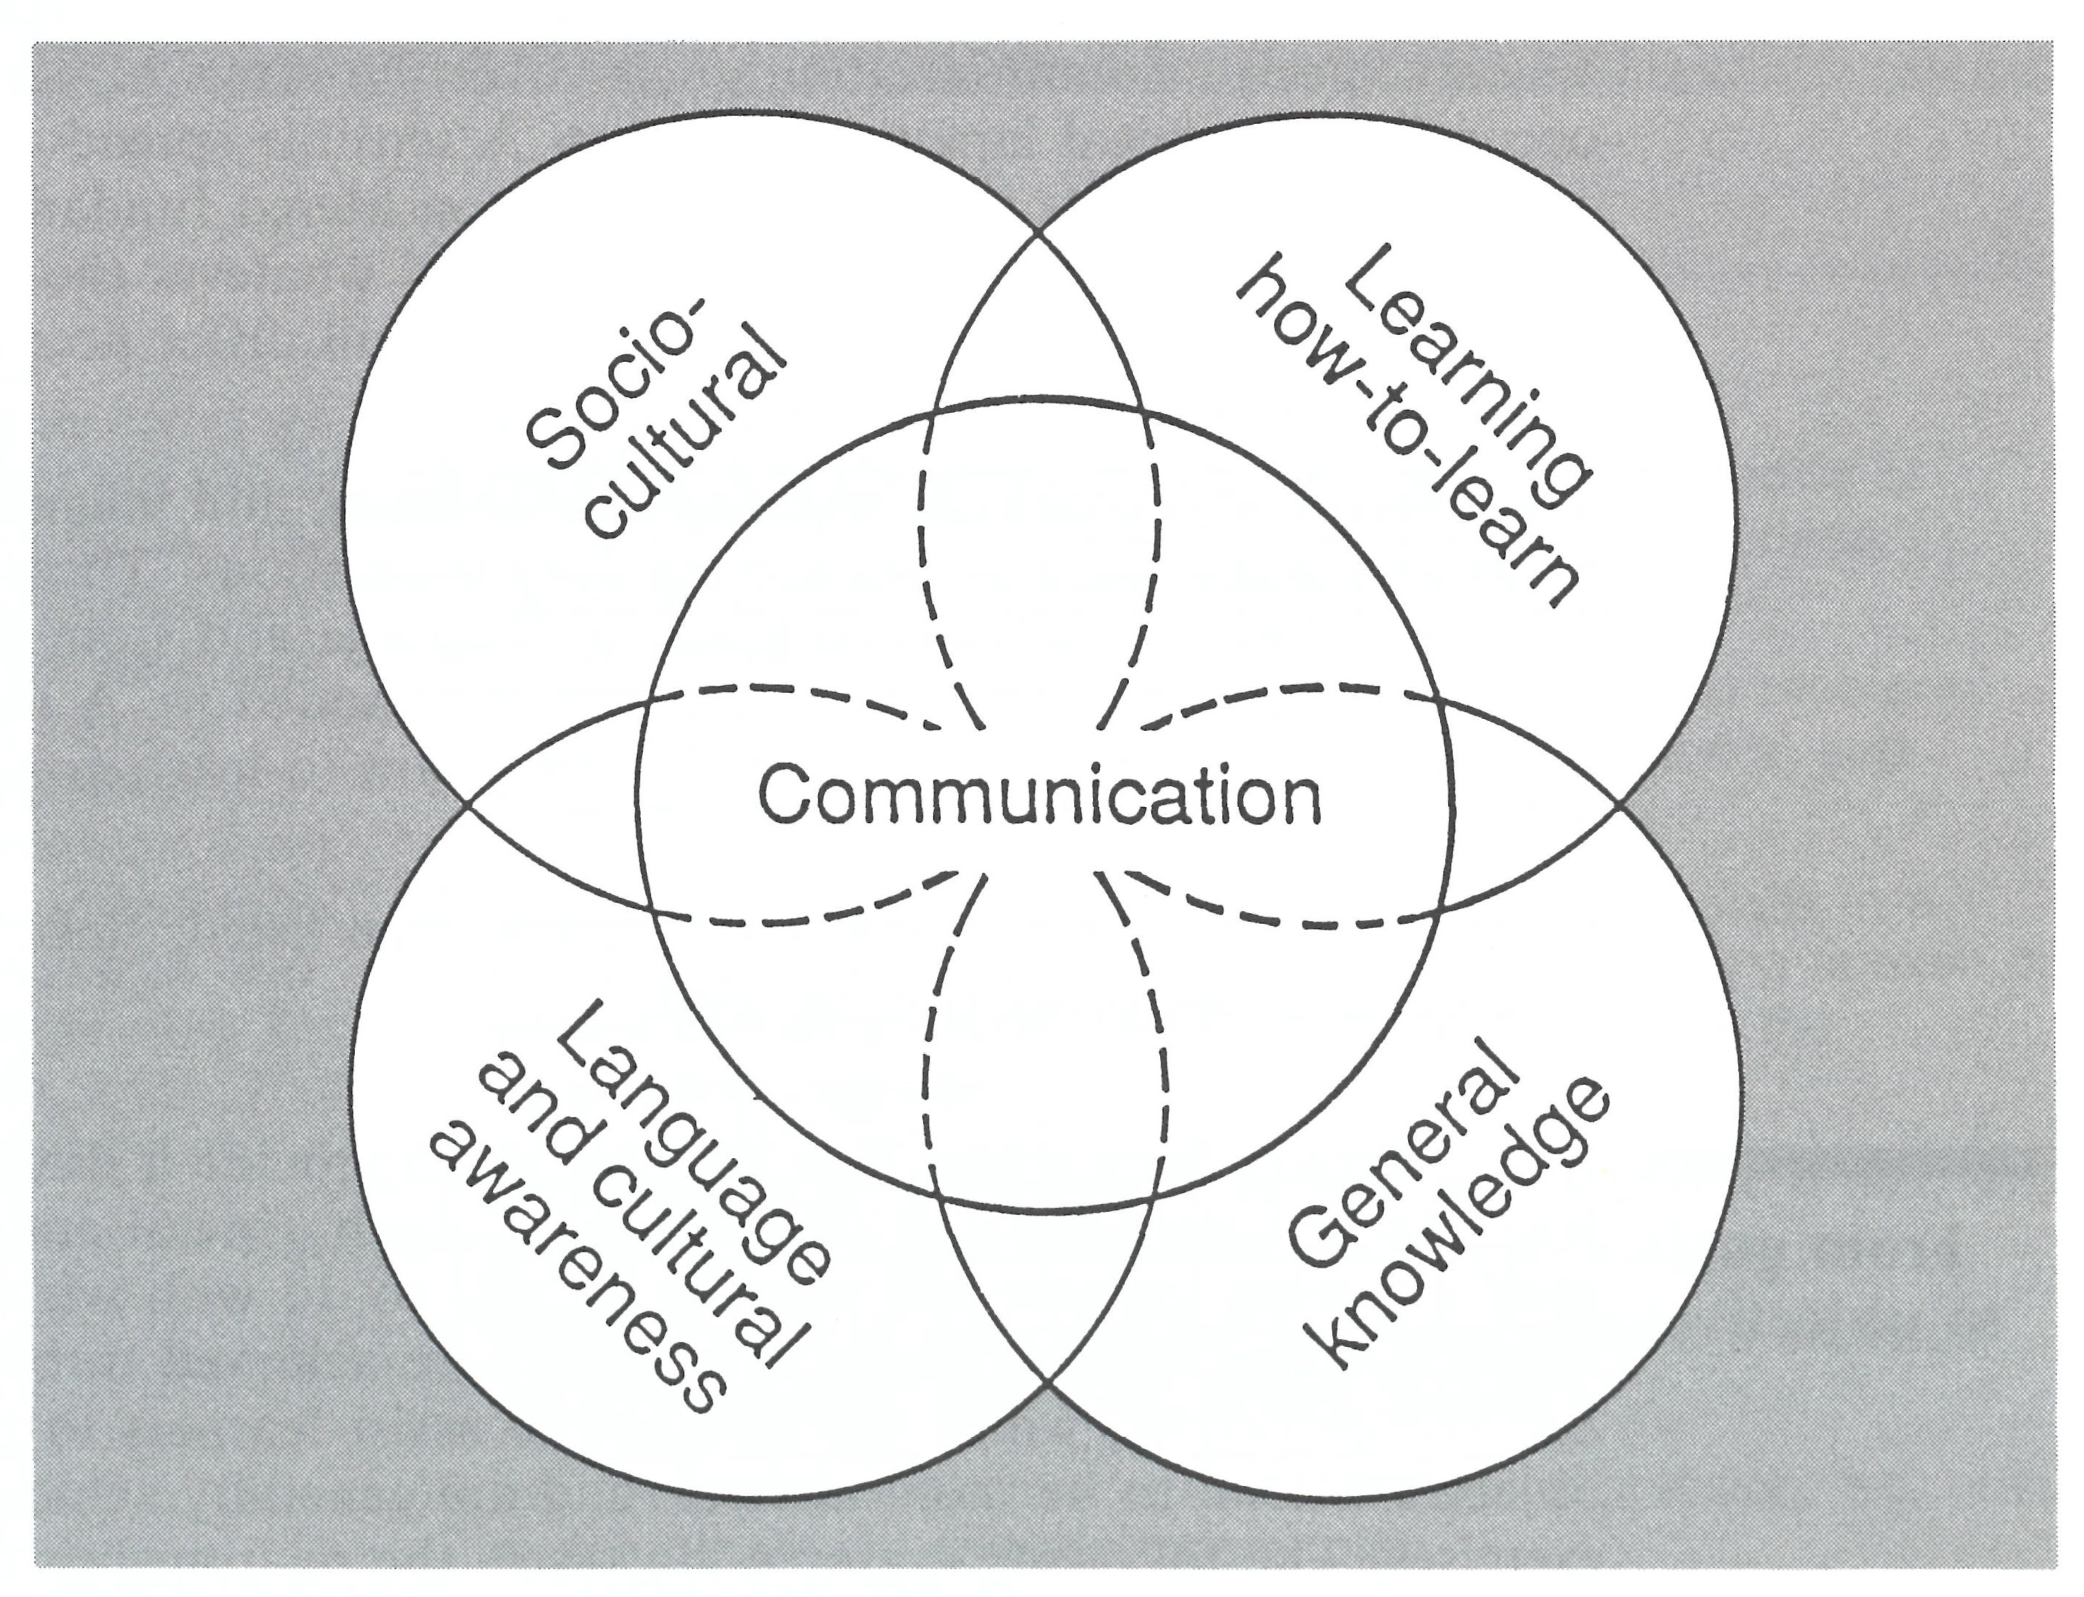 円状に重なる4つの円（Socio-cultural, Leaning how-to-learn, General knowledge, Language and cultural awareness）と中央の重なり部分を囲んだ1つの円（Communication）で図示された「ゴールの統合」の画像